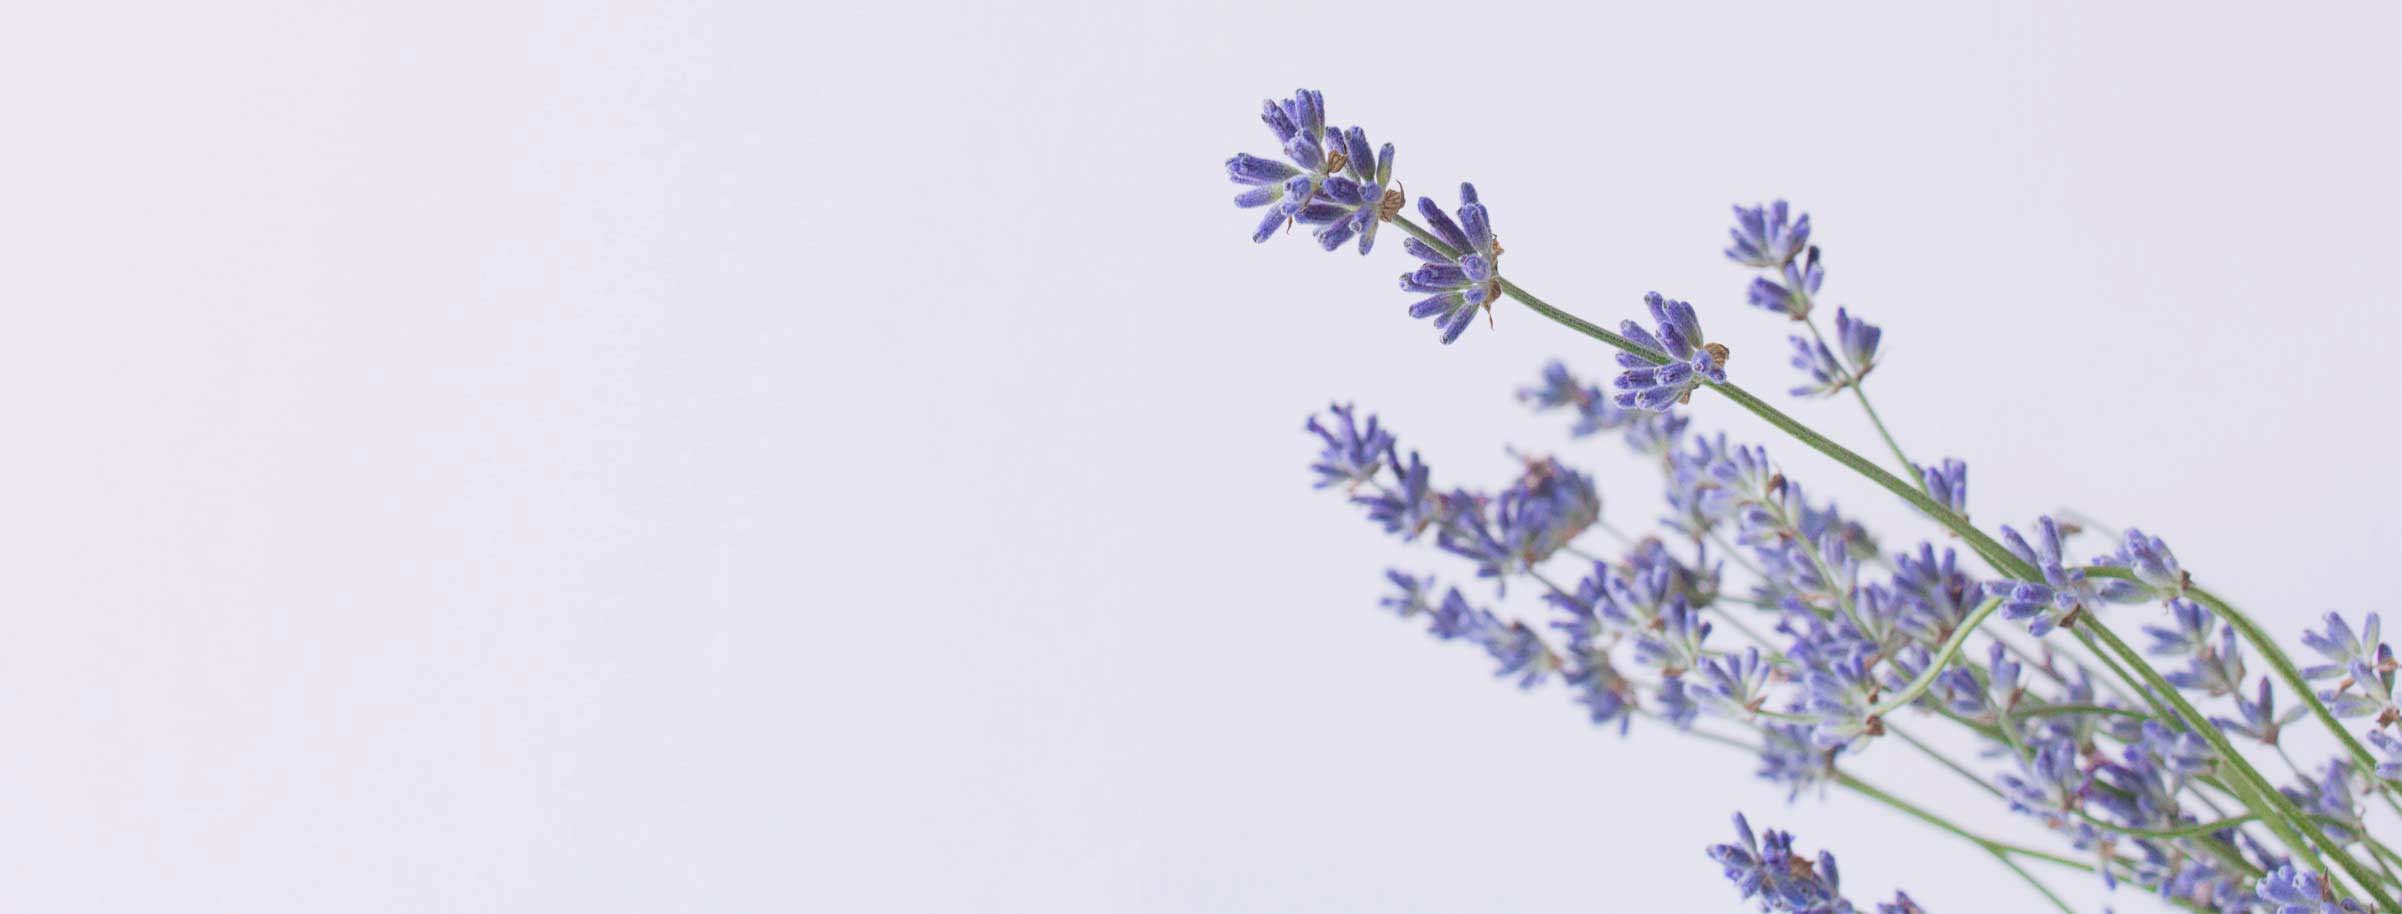 Afbeelding van een lavendelplant